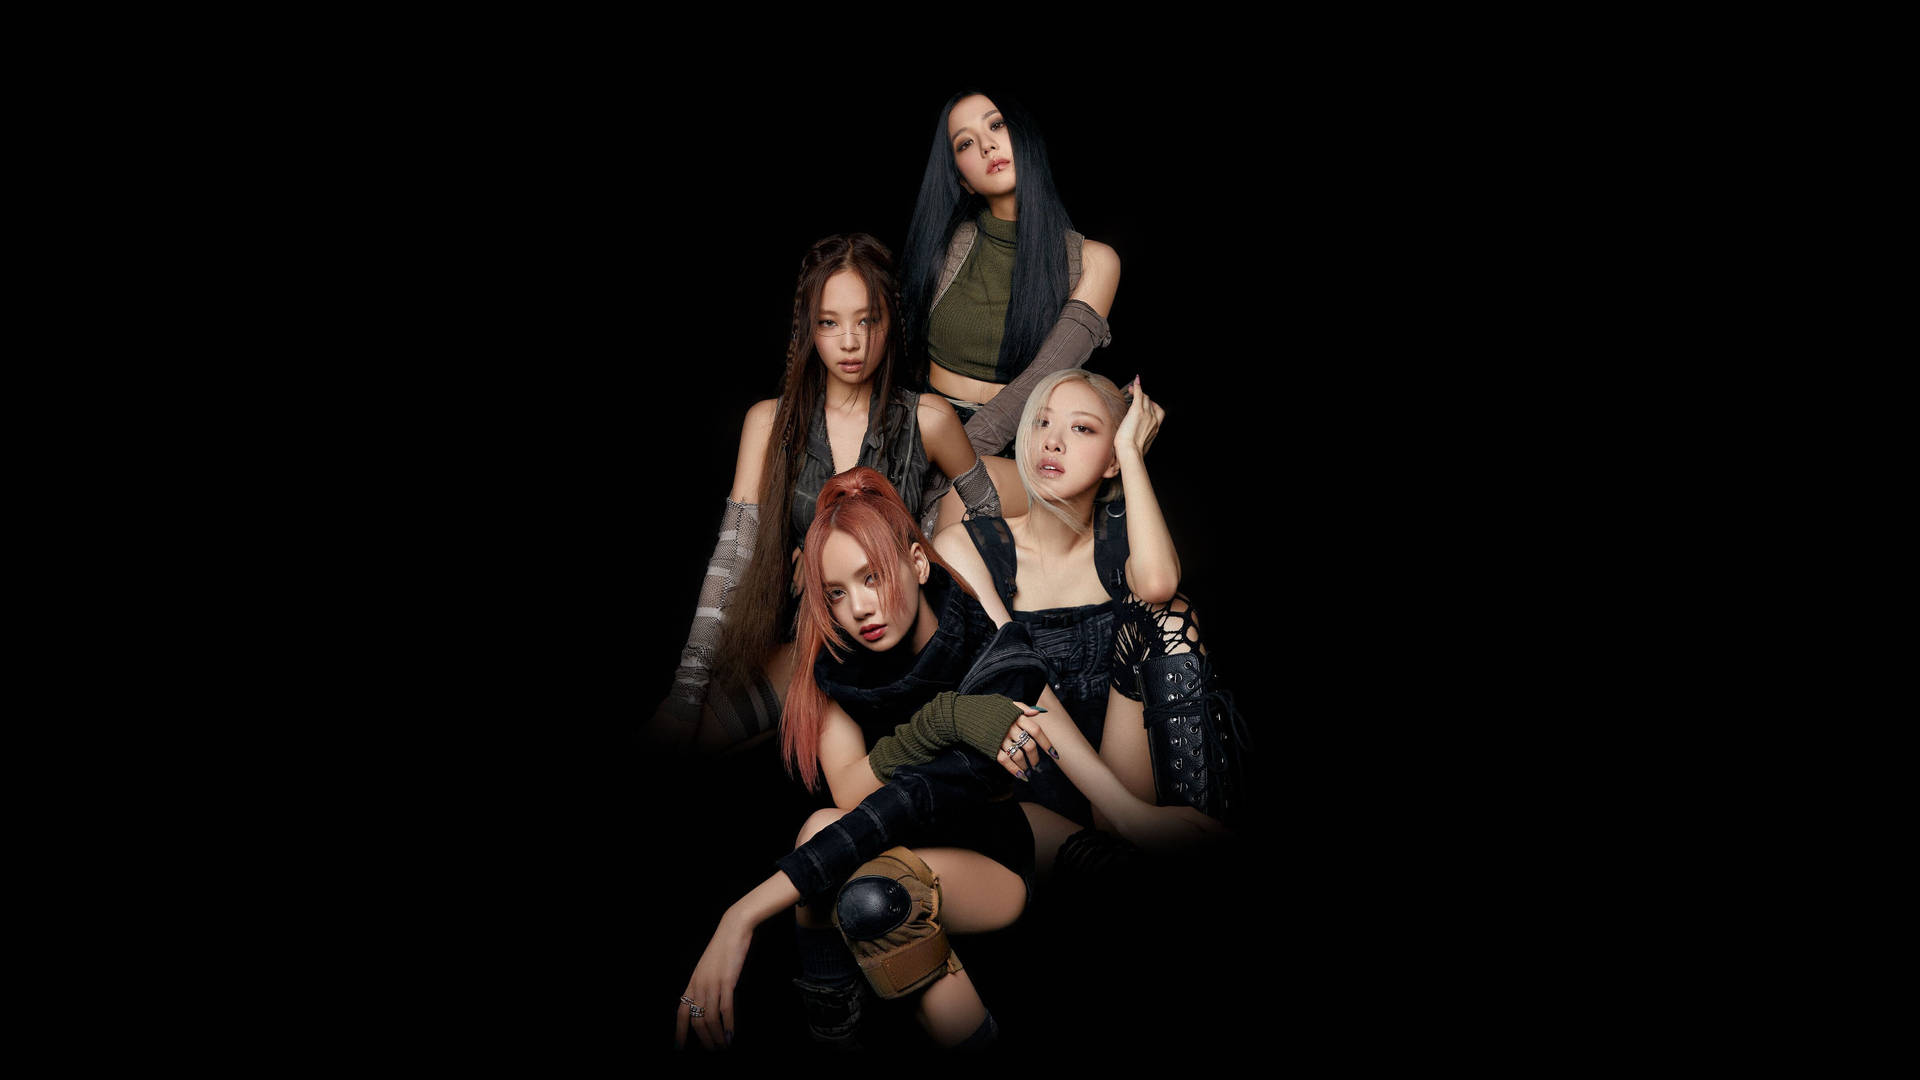 Kpop Gruppen Blackpink Concept Teaser Wallpaper